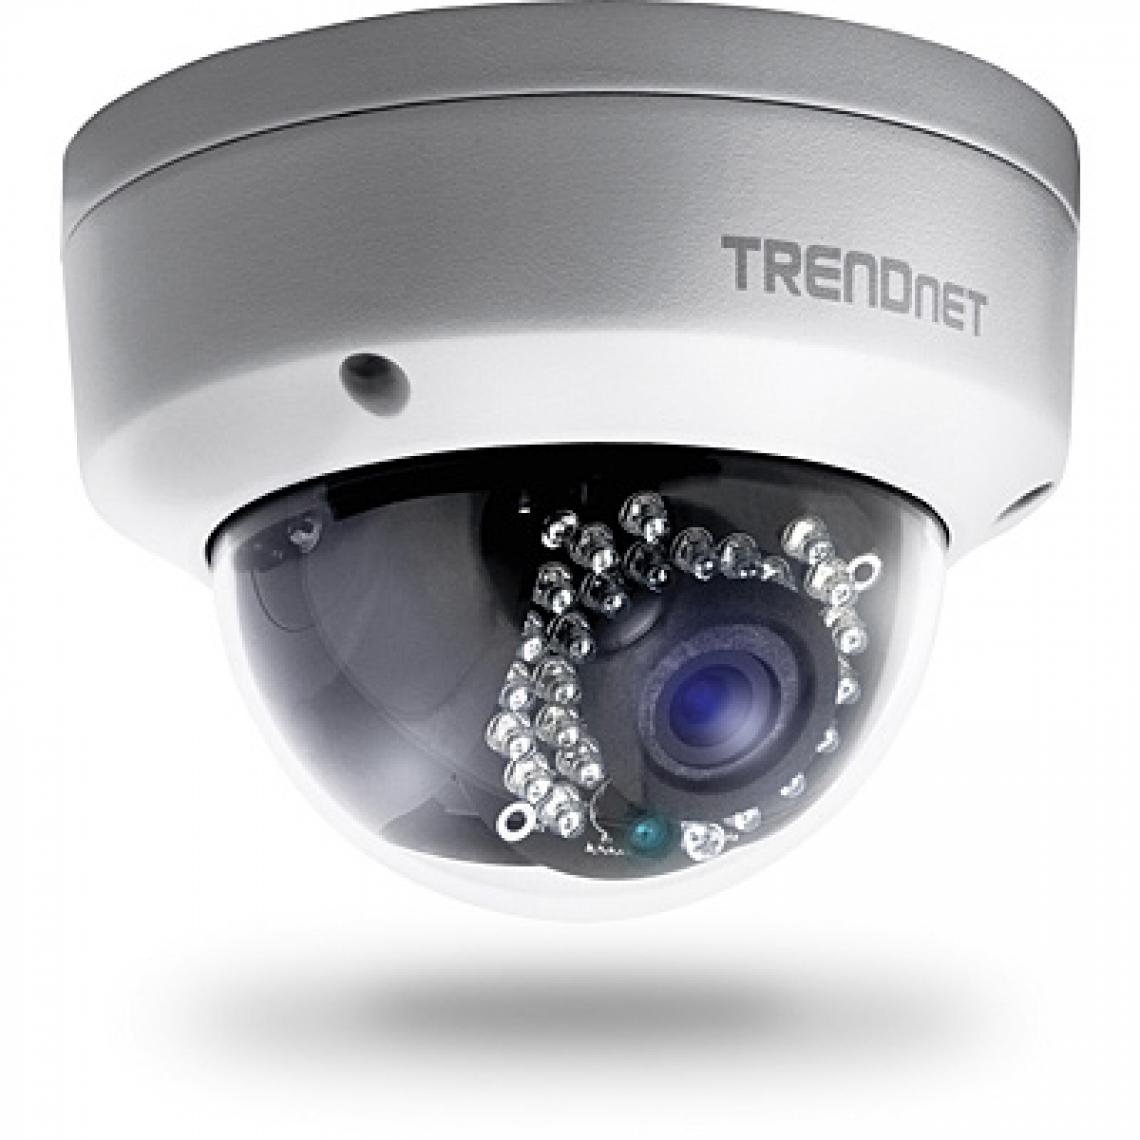 Trendnet - TV-IP321PI - Caméra de surveillance connectée